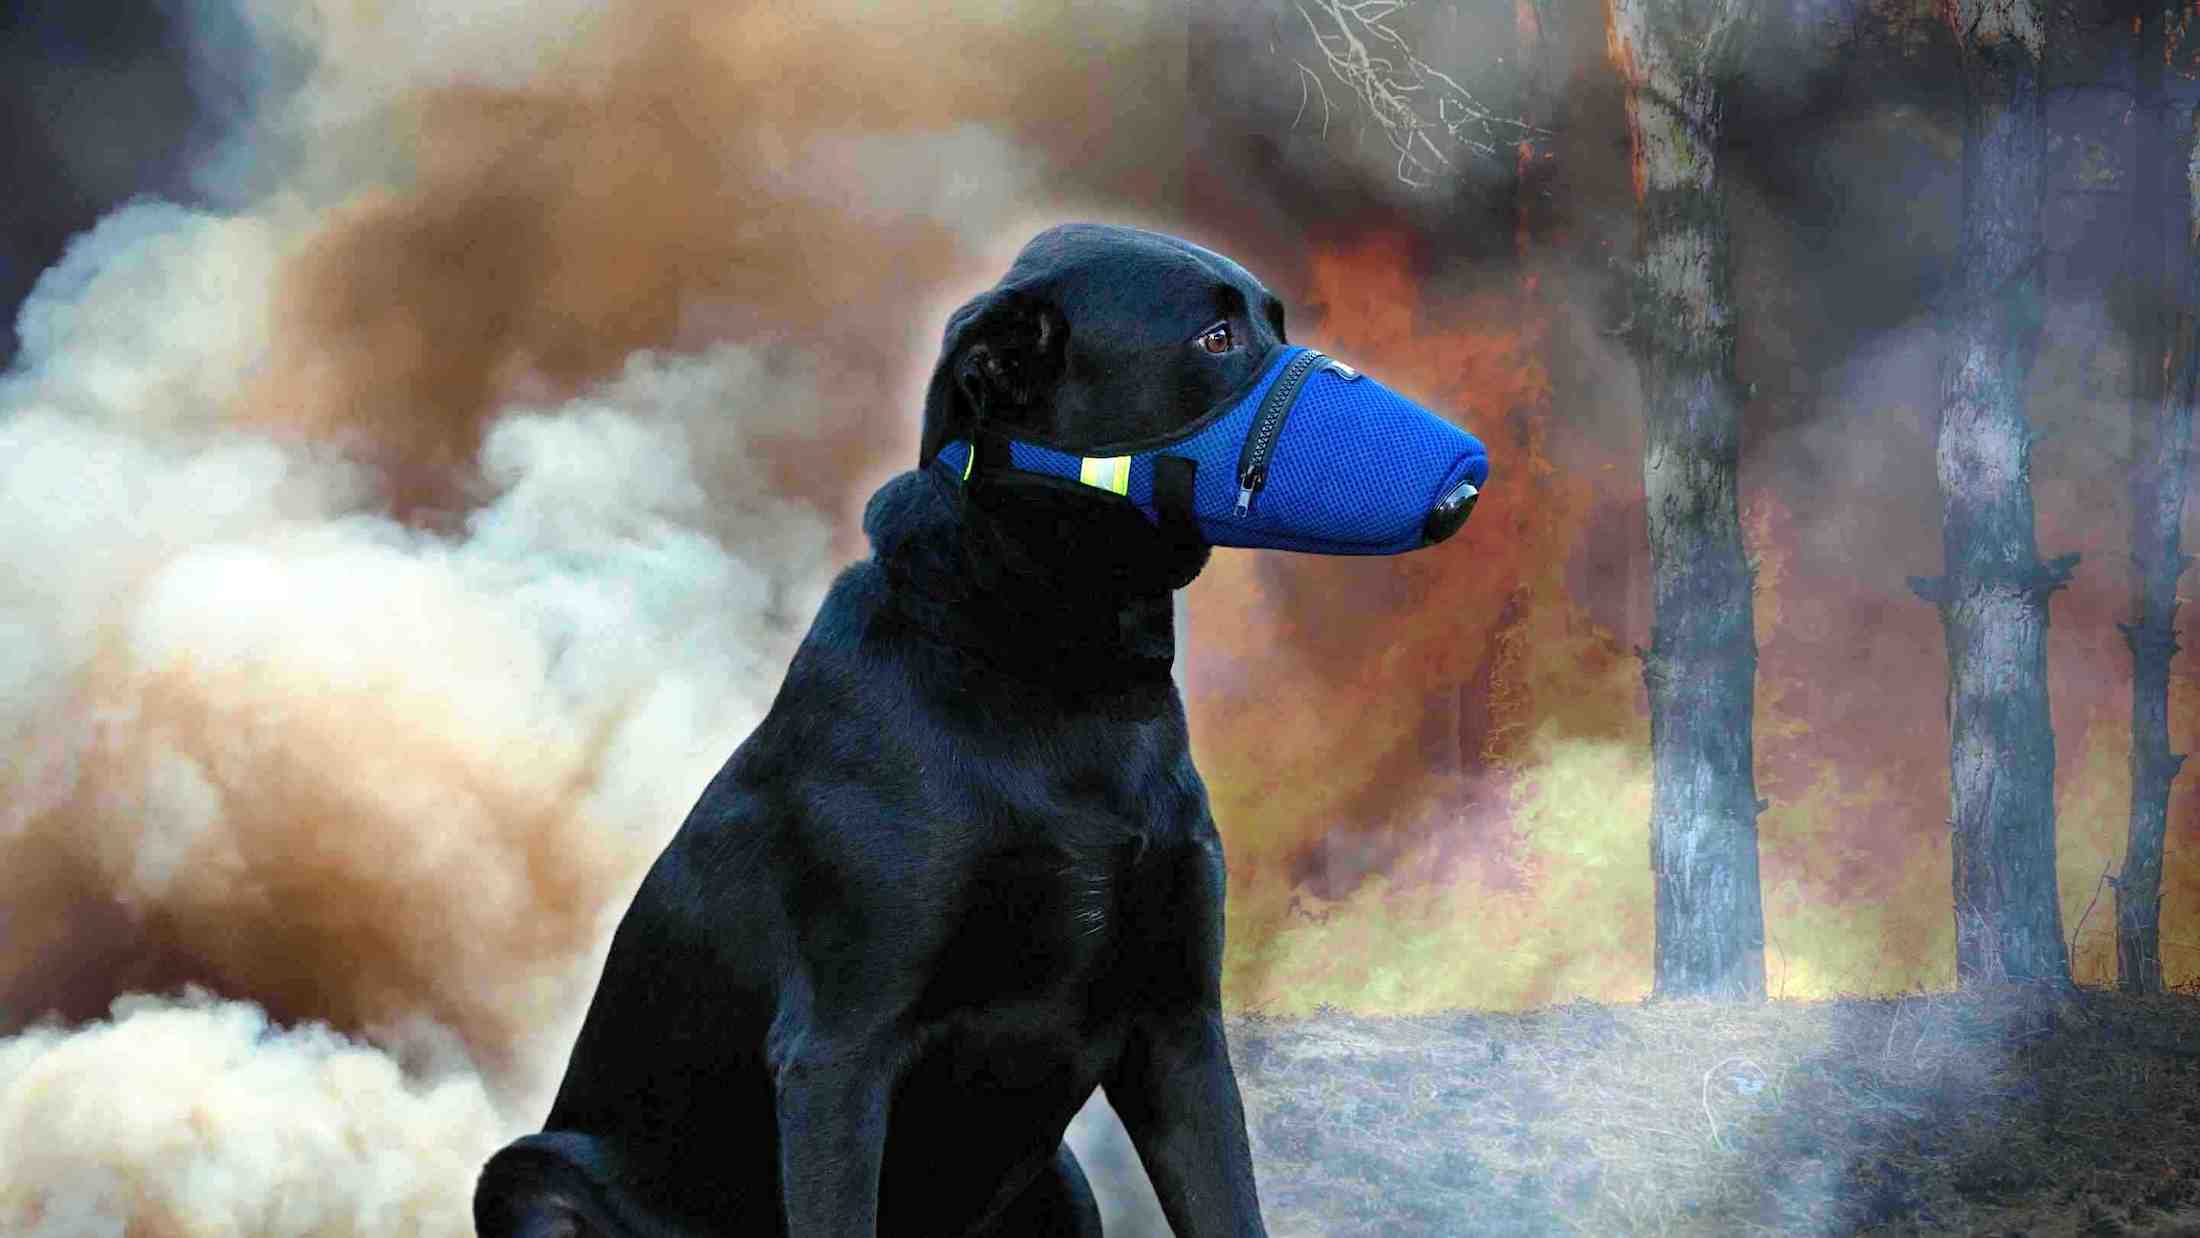 K9 Mask® Hondenluchtfilter gezichtsmasker voor honden voor rook, stof, as, pollen, traangas, vloed, chemicaliën, traangas, bacteriën, allergenen